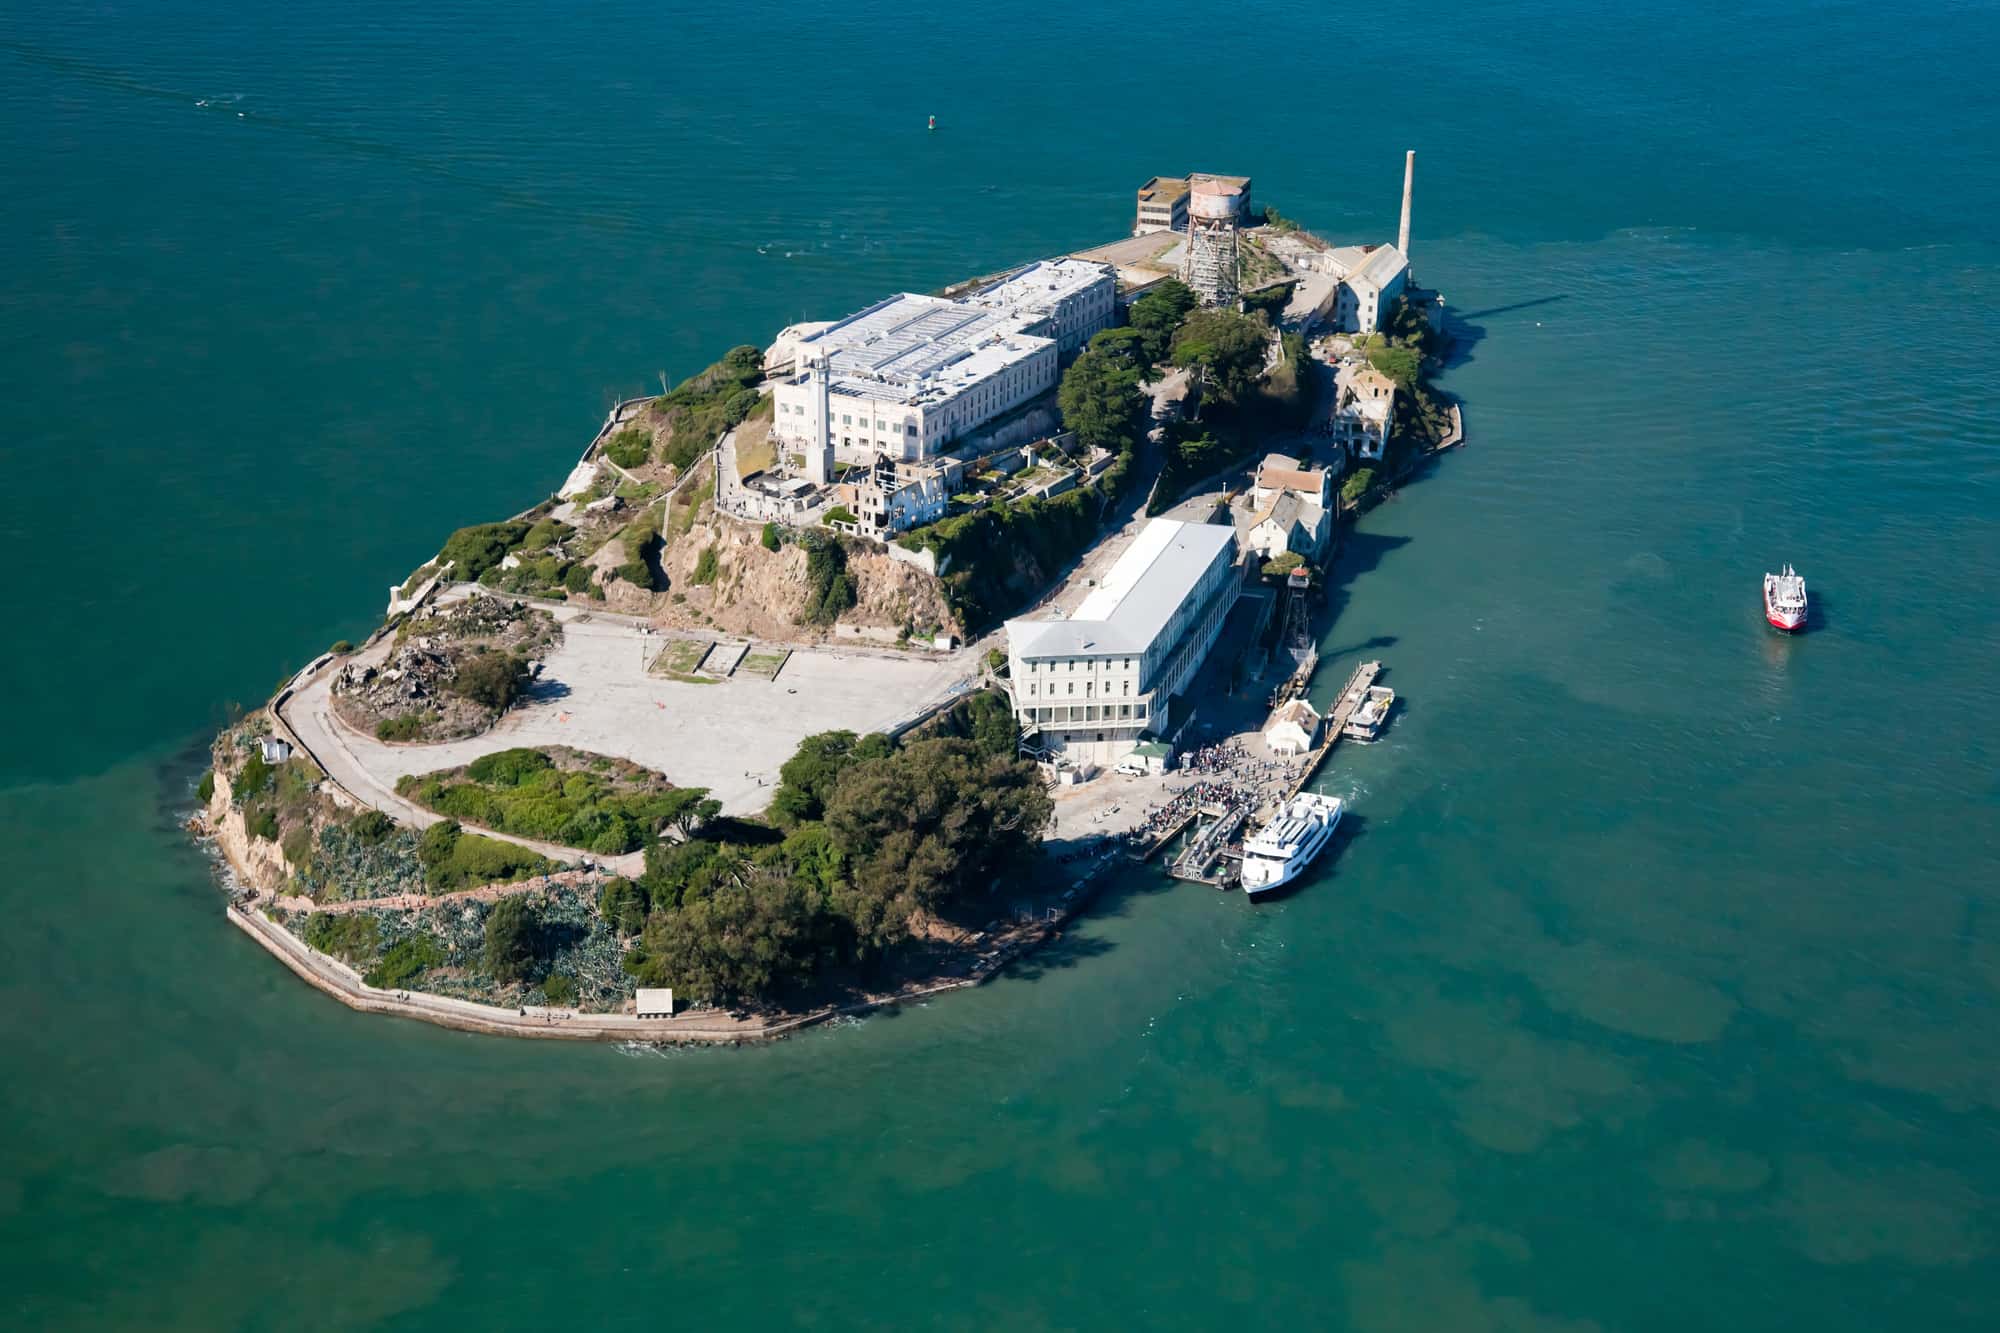 luftfoto af fængslet på øen alcatraz i san francisco